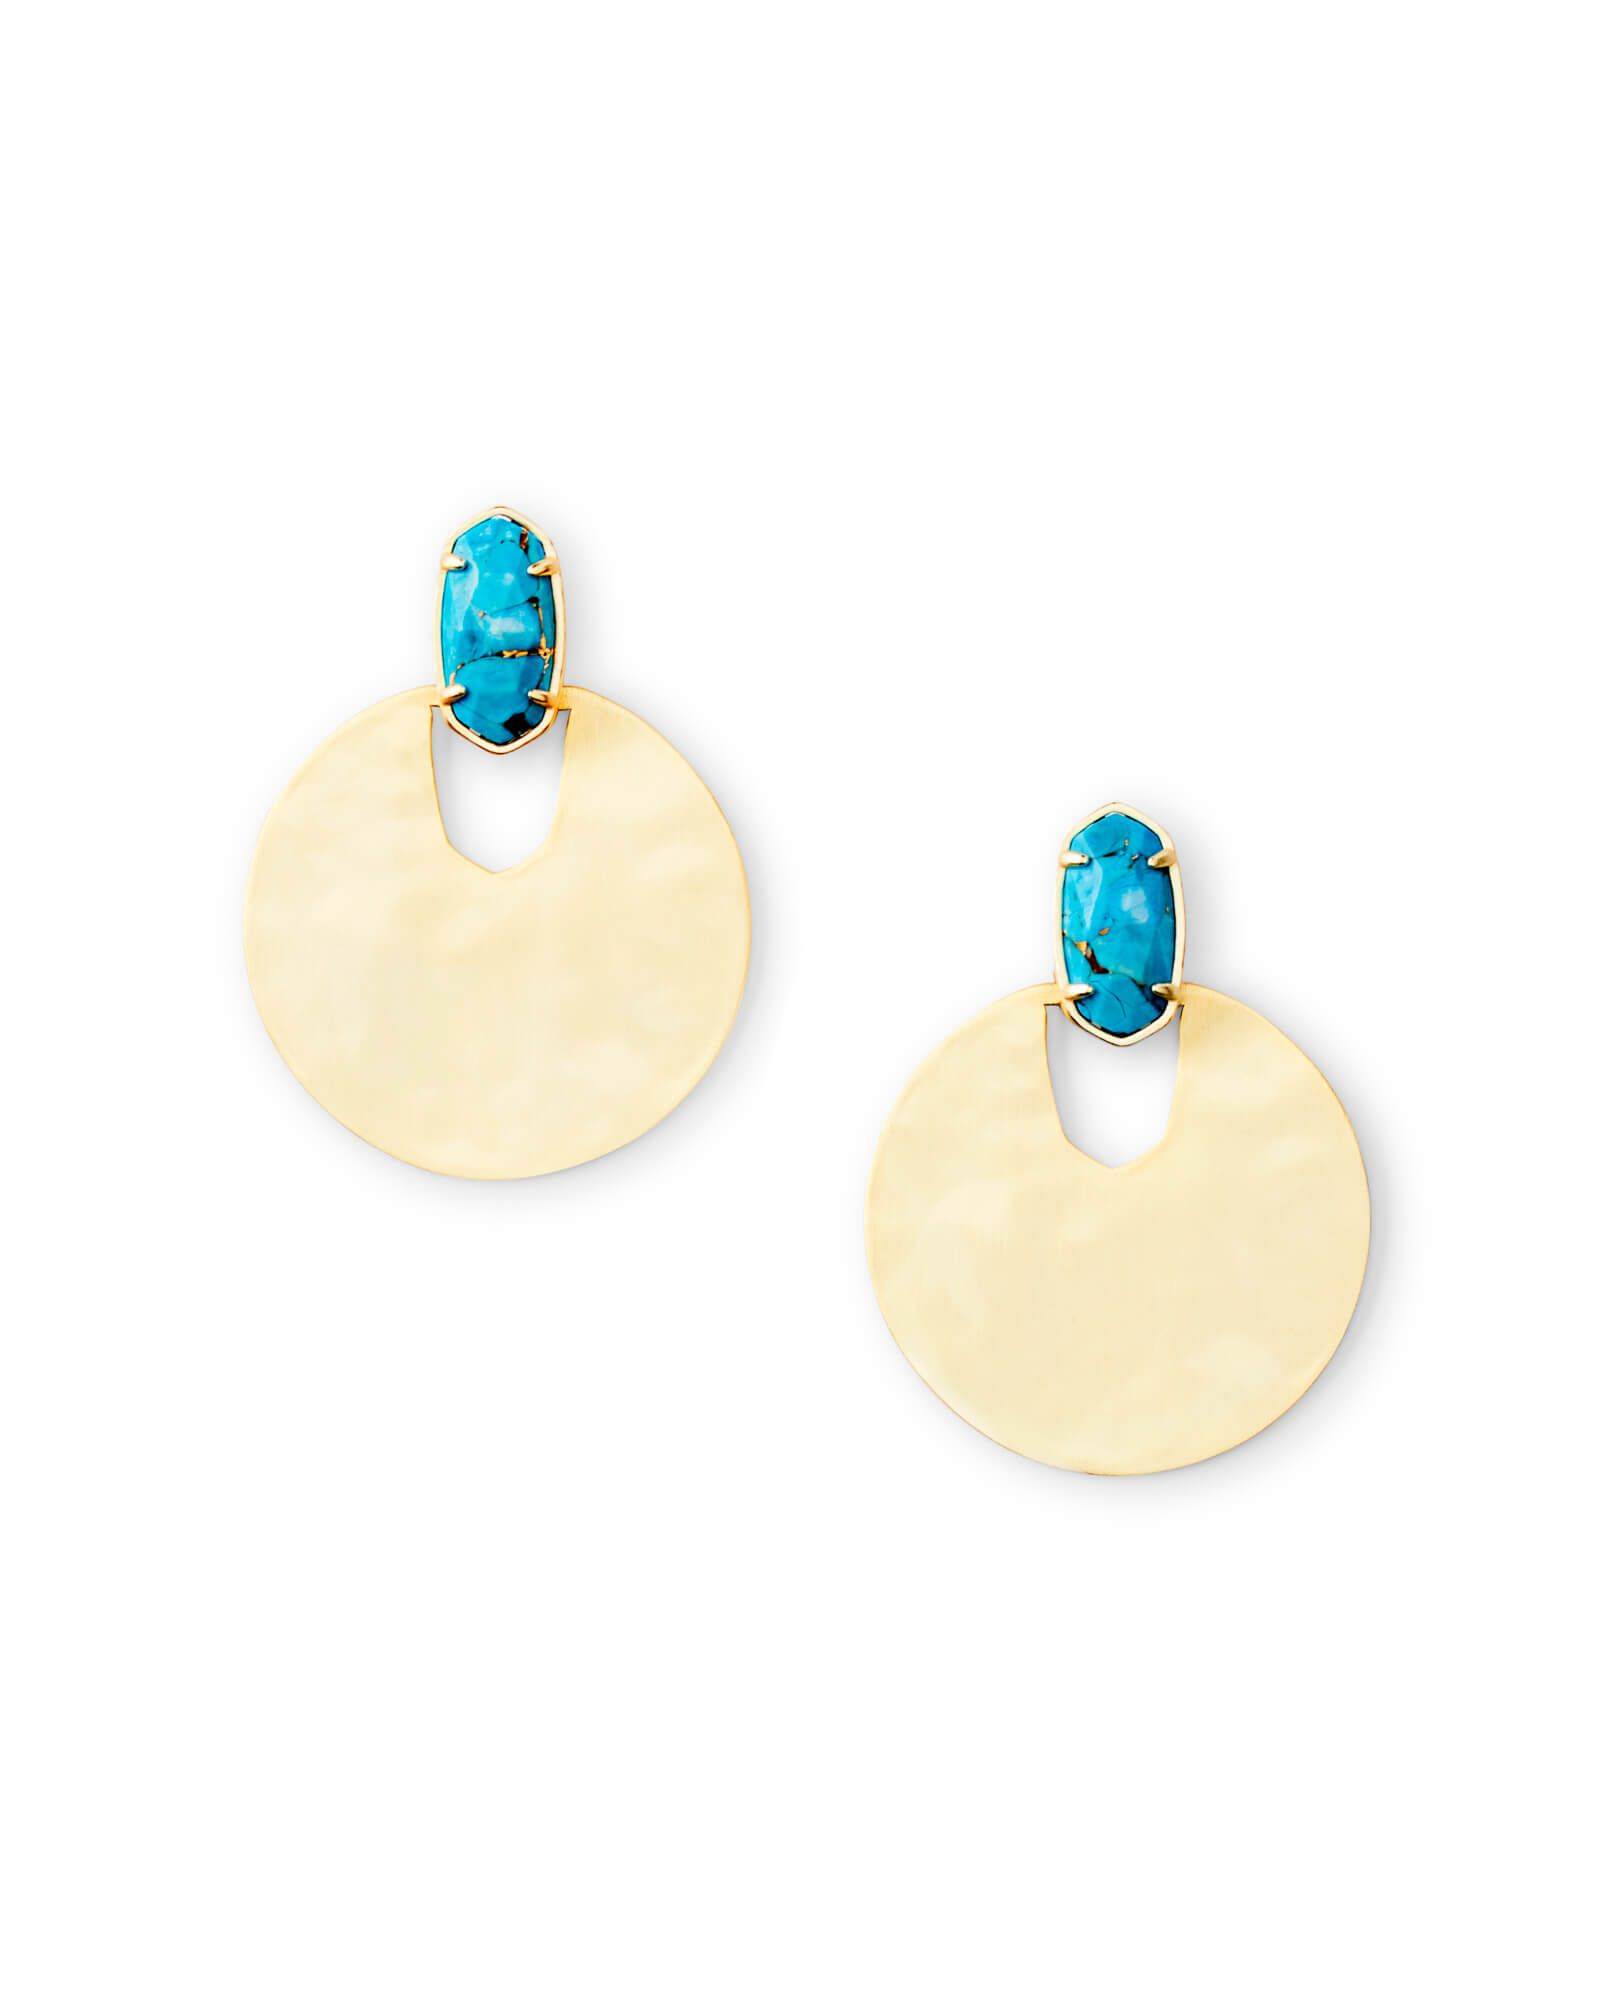 Deena Gold Drop Earrings in Bronze Veined Turquoise Magnesite | Kendra Scott | Kendra Scott